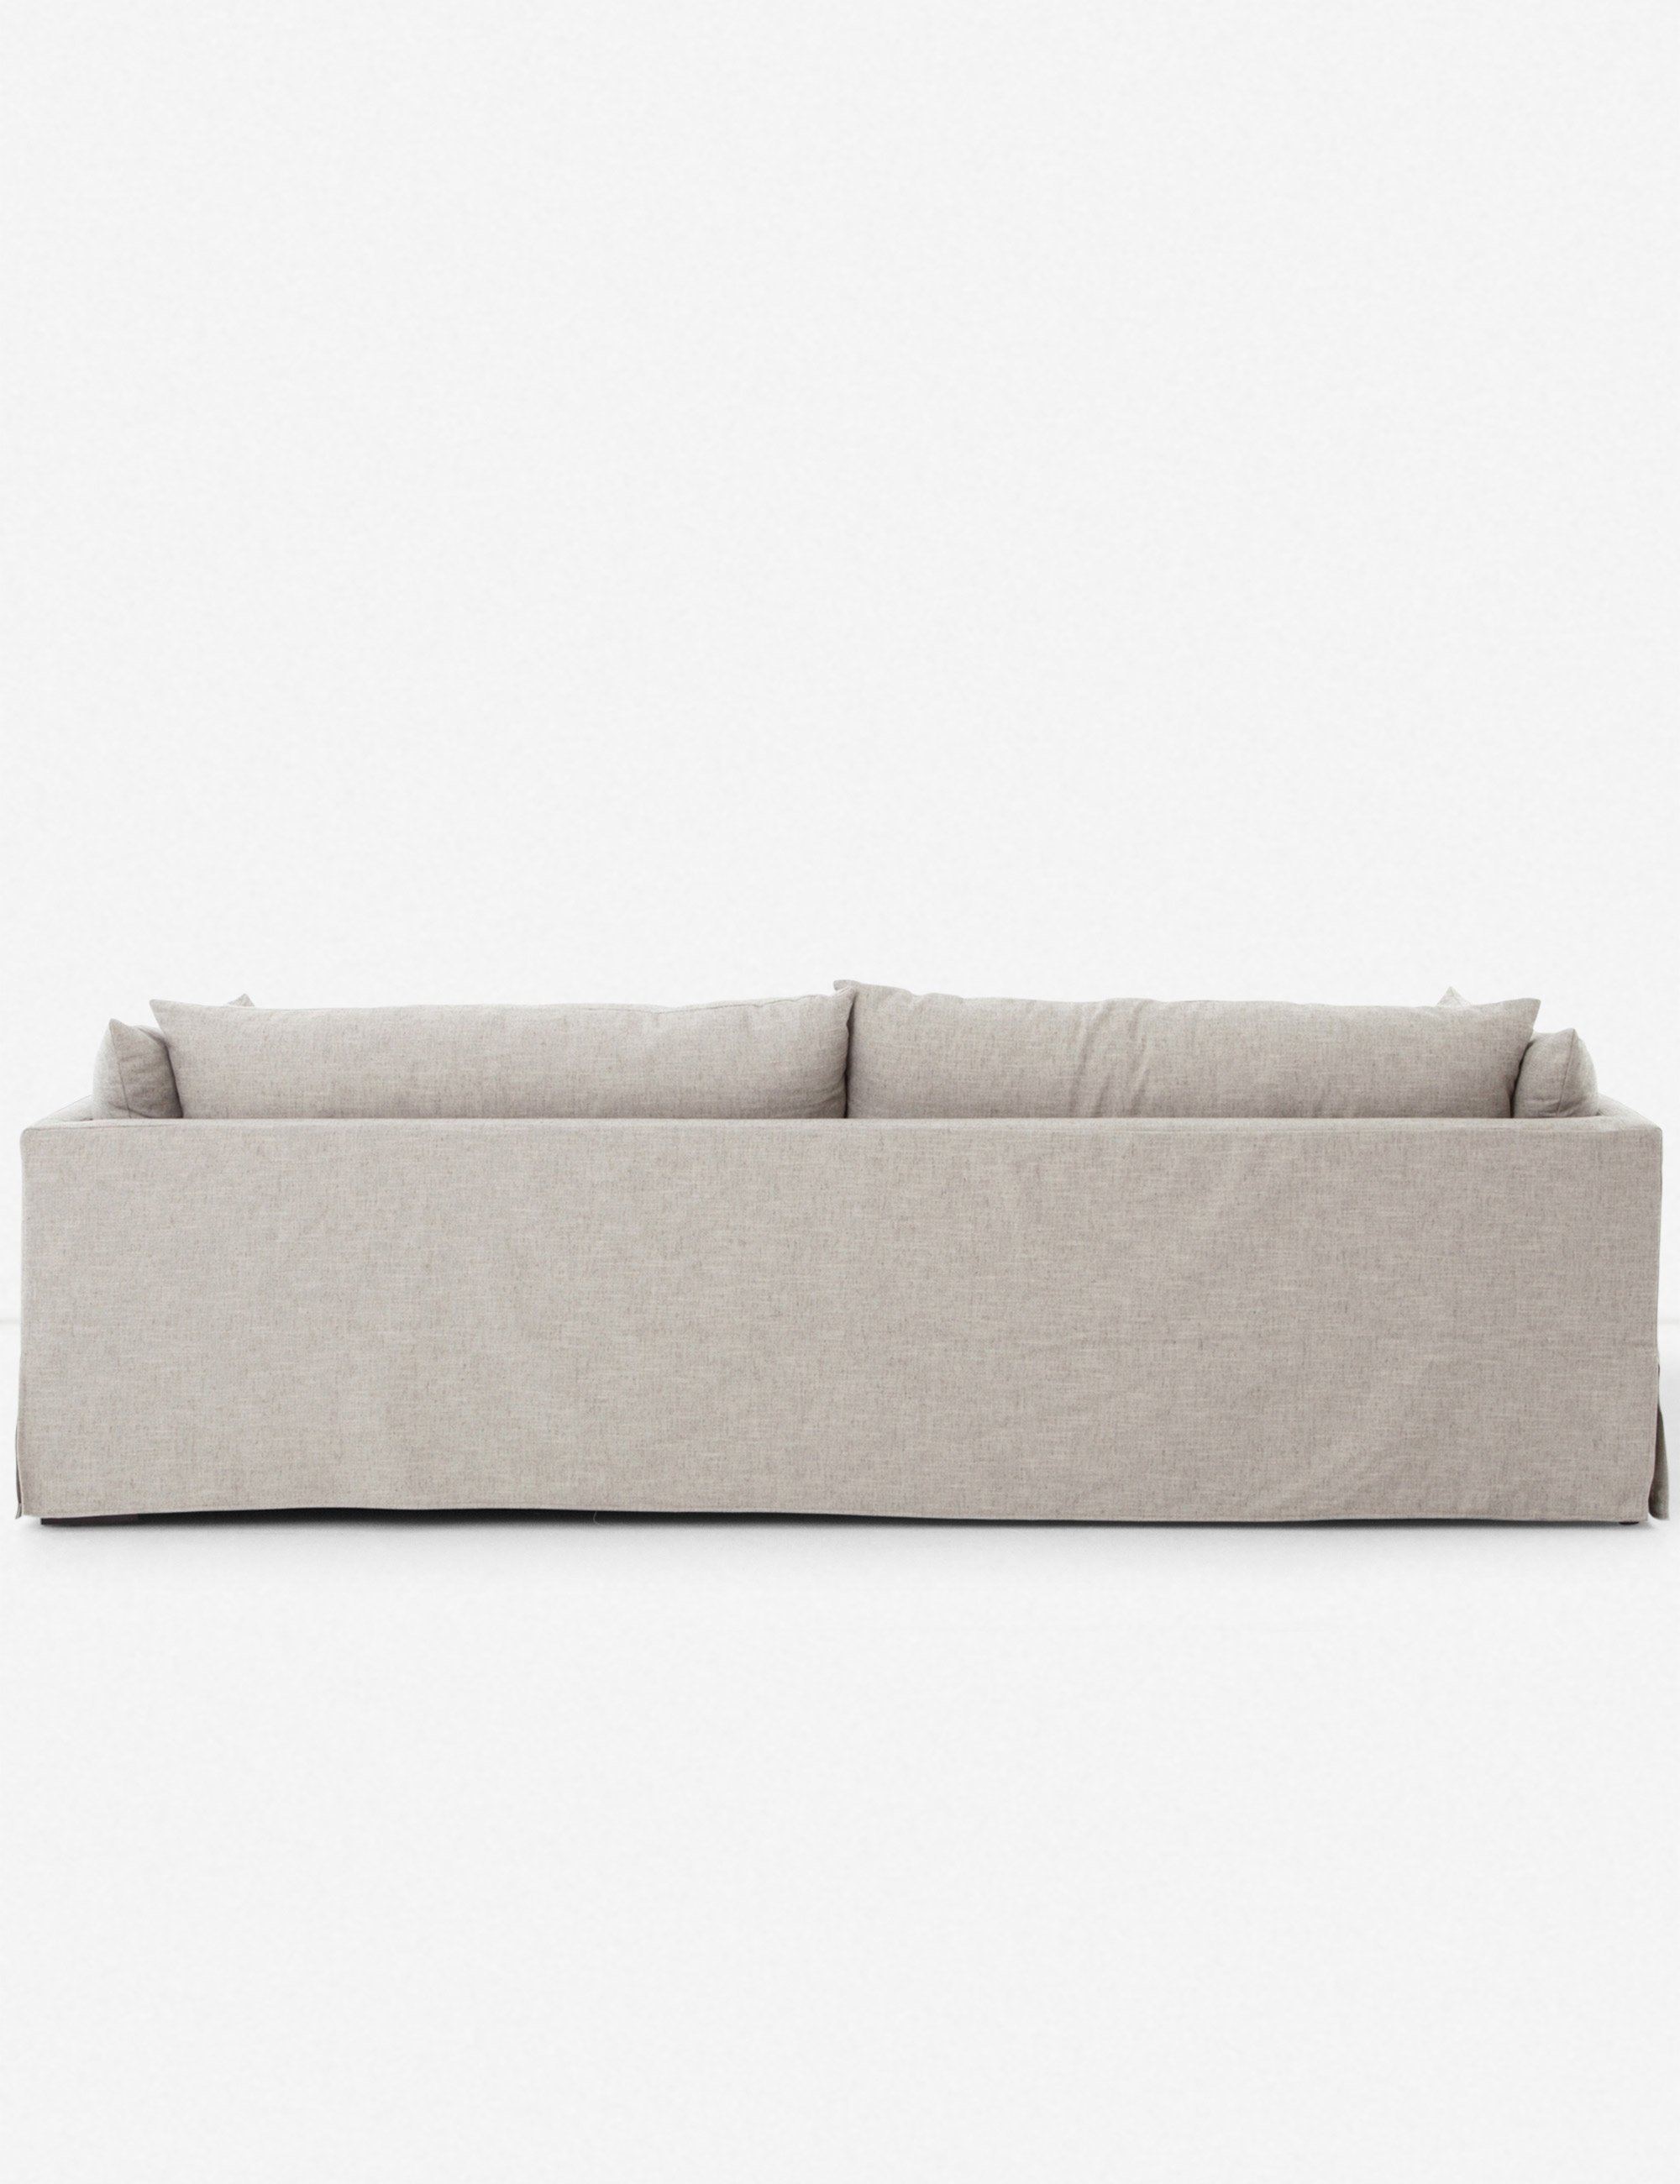 Arlen Slipcover Sofa - Image 2